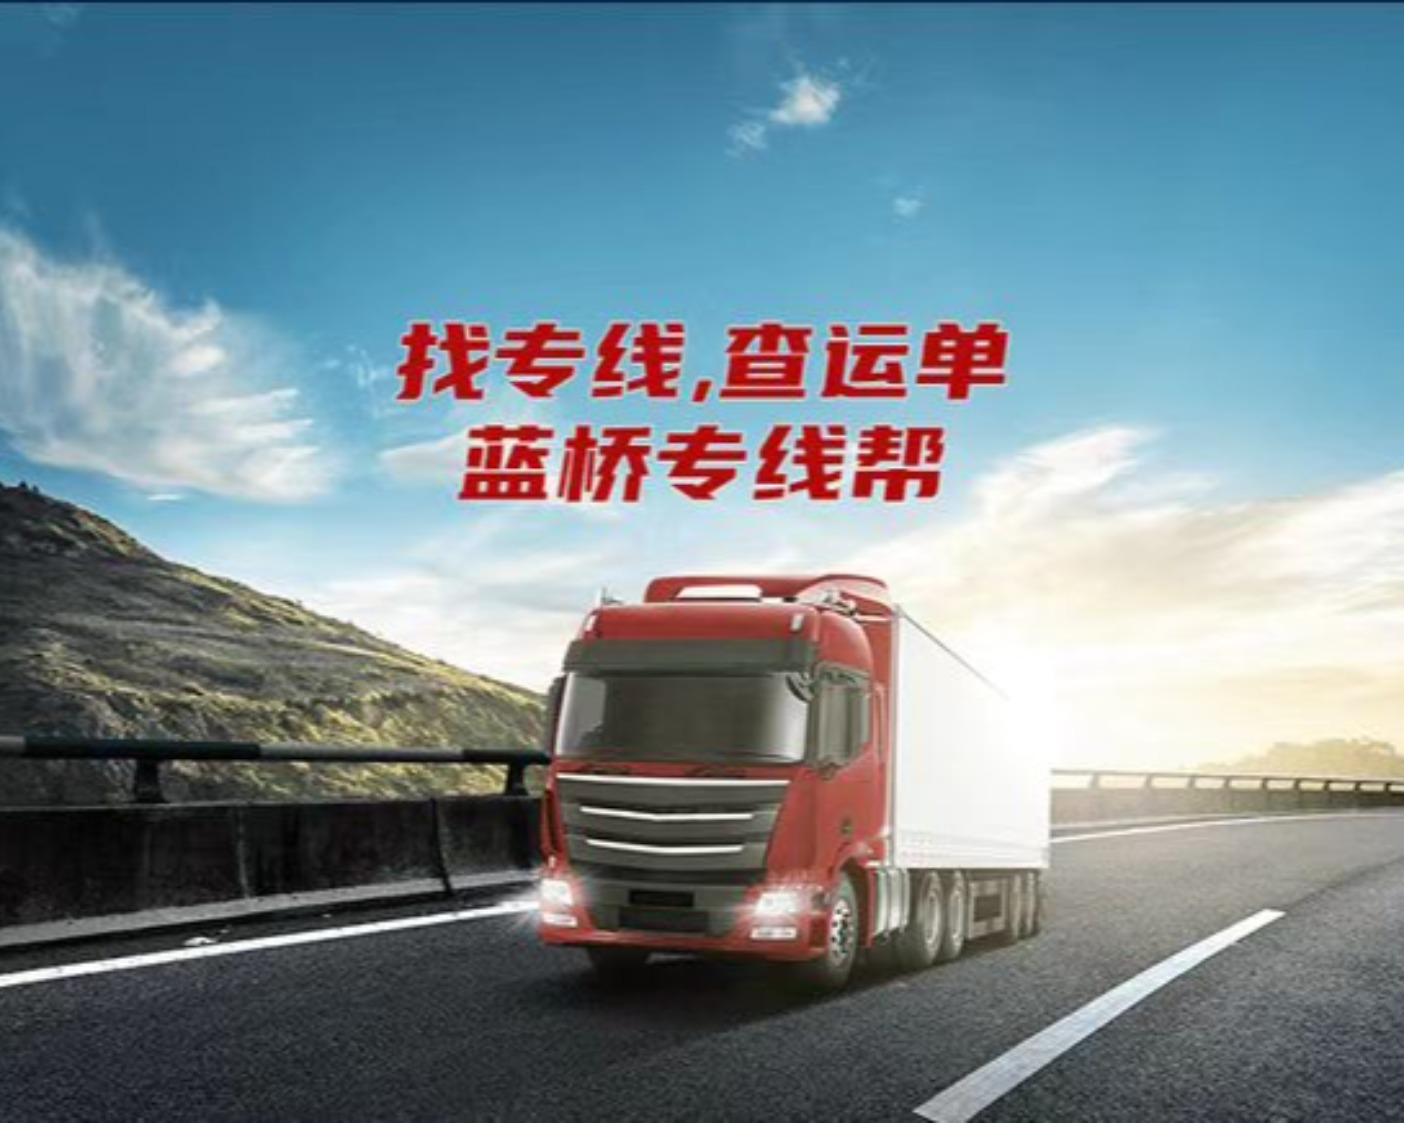 天津恒盛物流有限公司的专线公司的形象展示LOGO